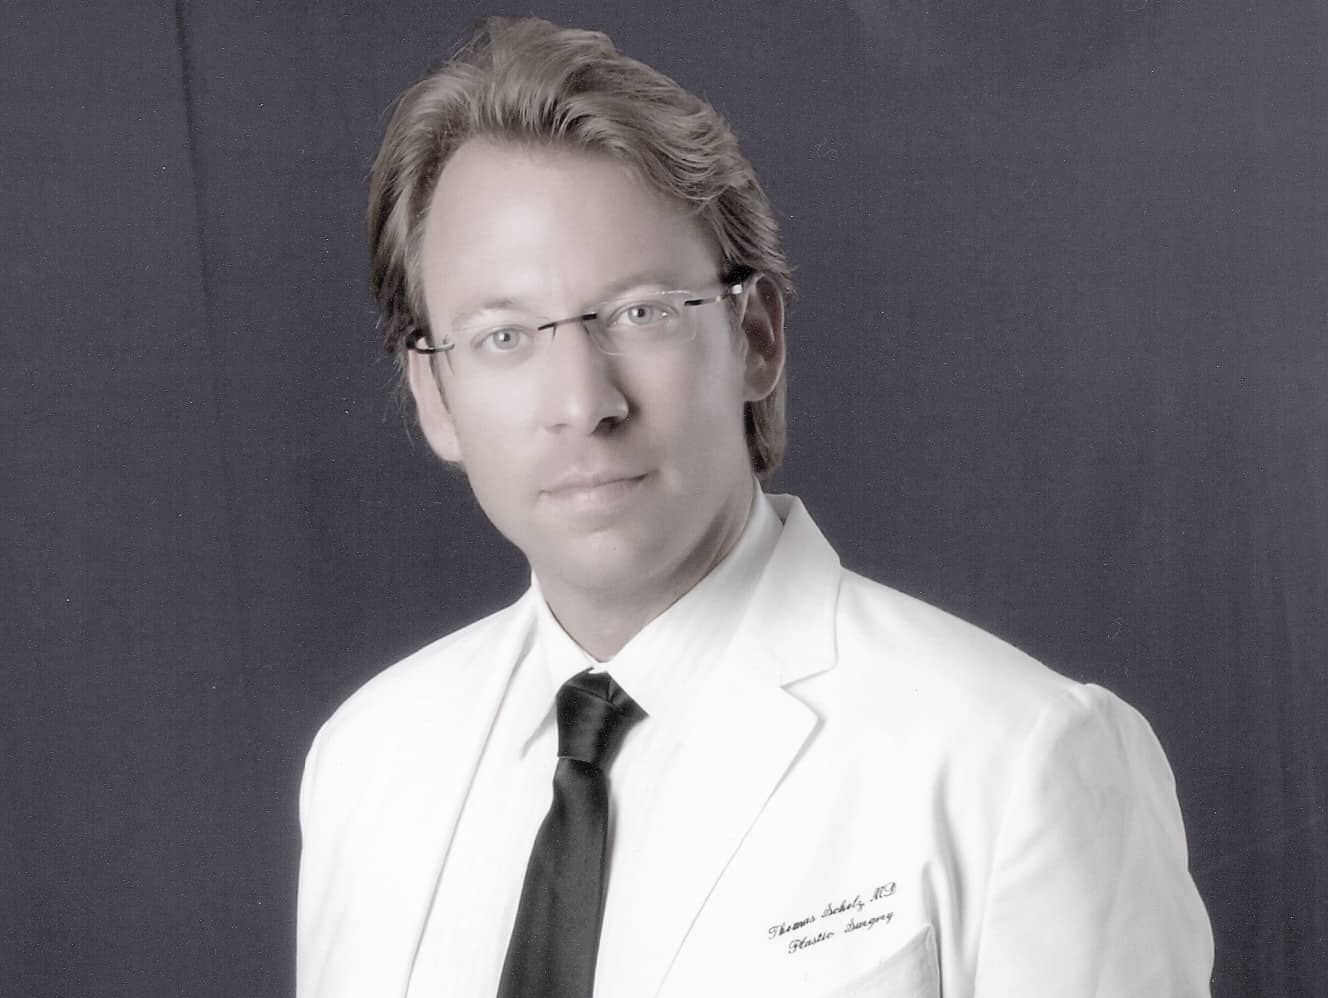 Schoenheitschirurg Dr. Scholz aus München